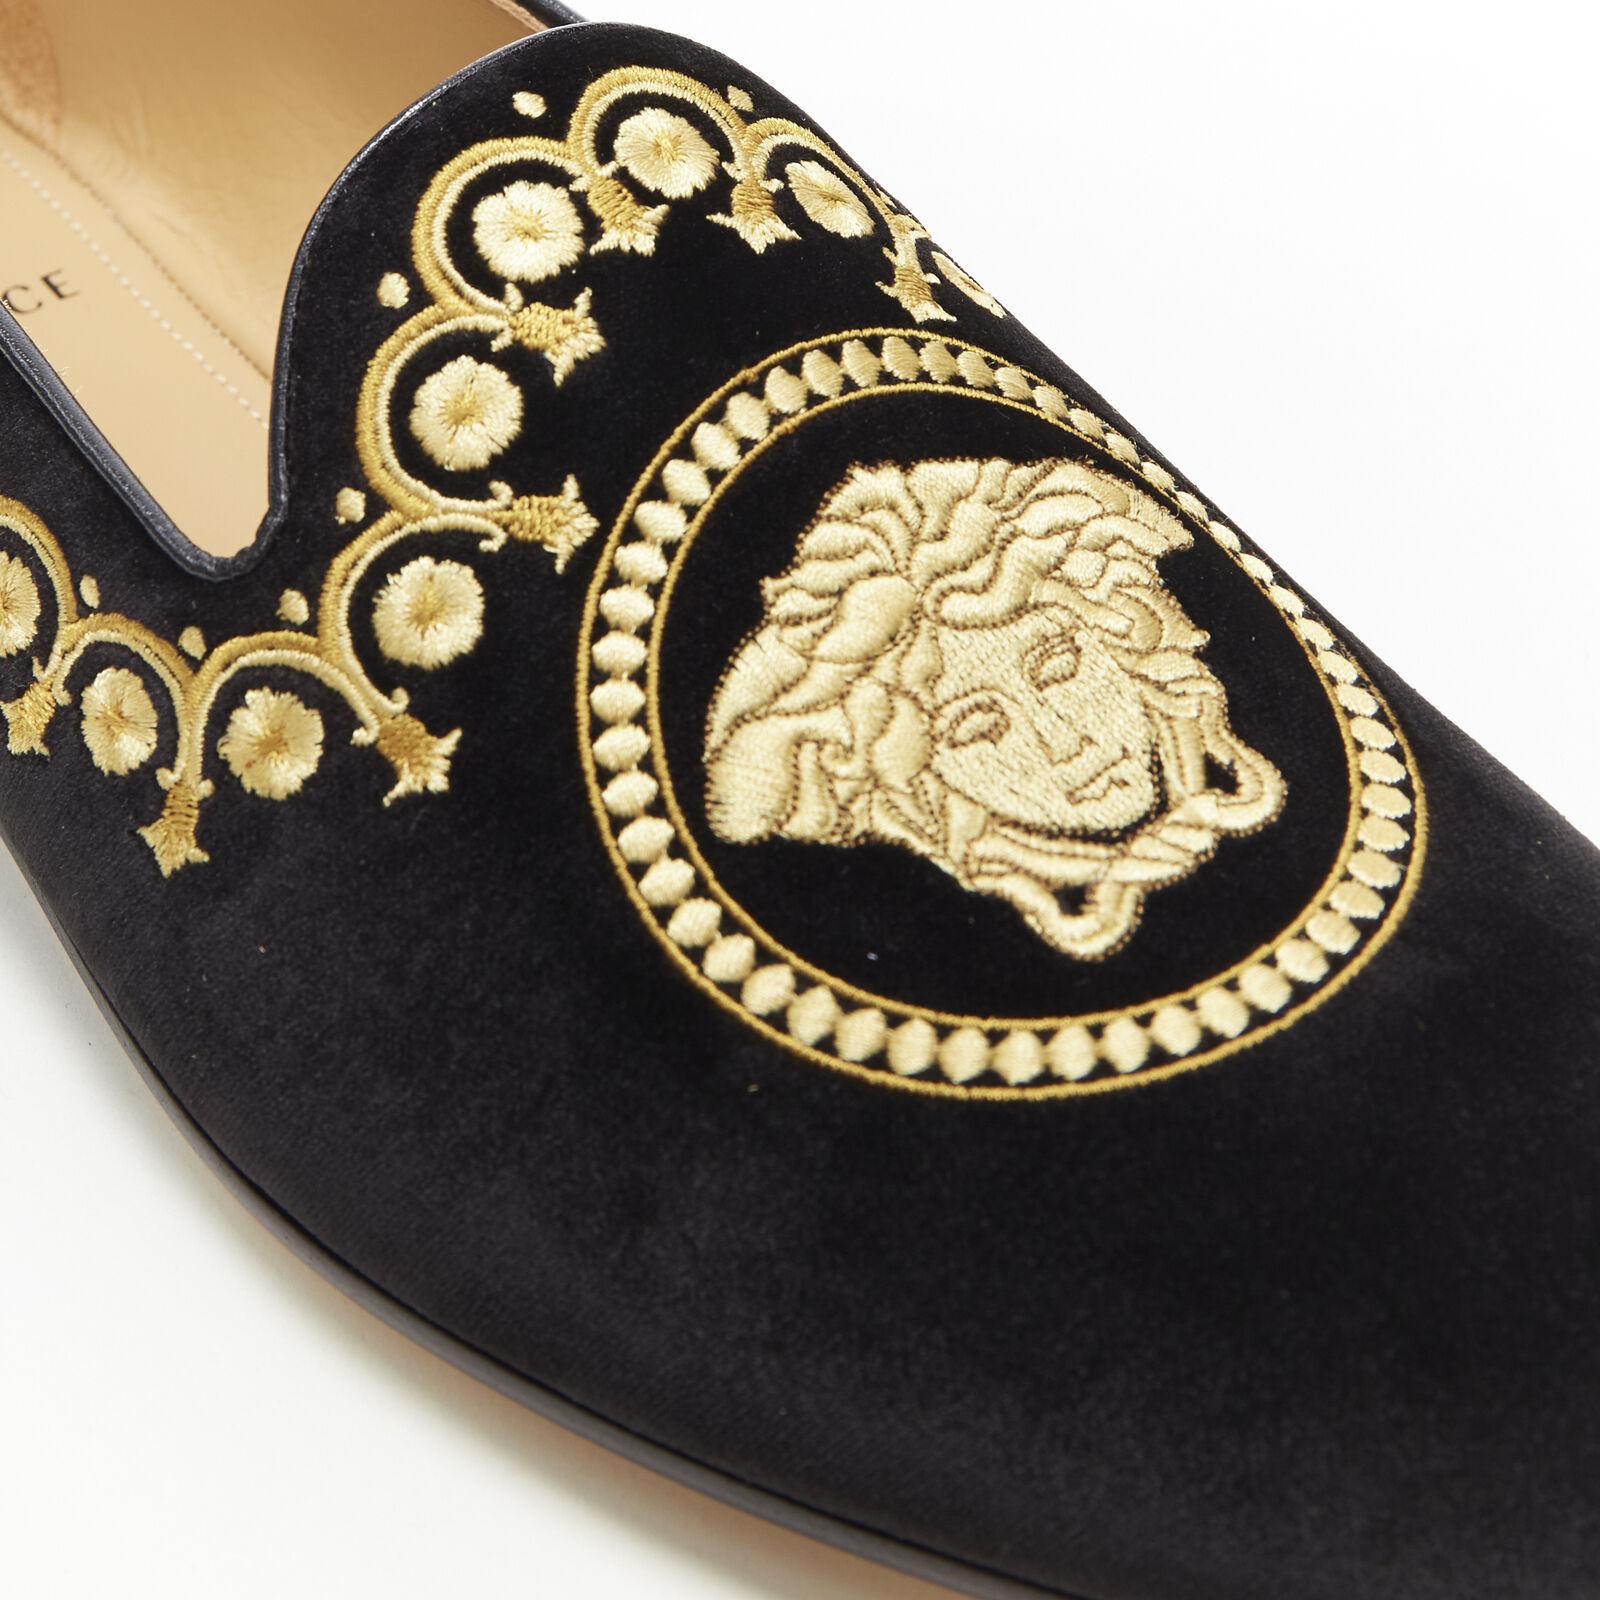 NEW VERSACE black velvet Medusa baroque embroidery smoking slipper loafer 7.5  5